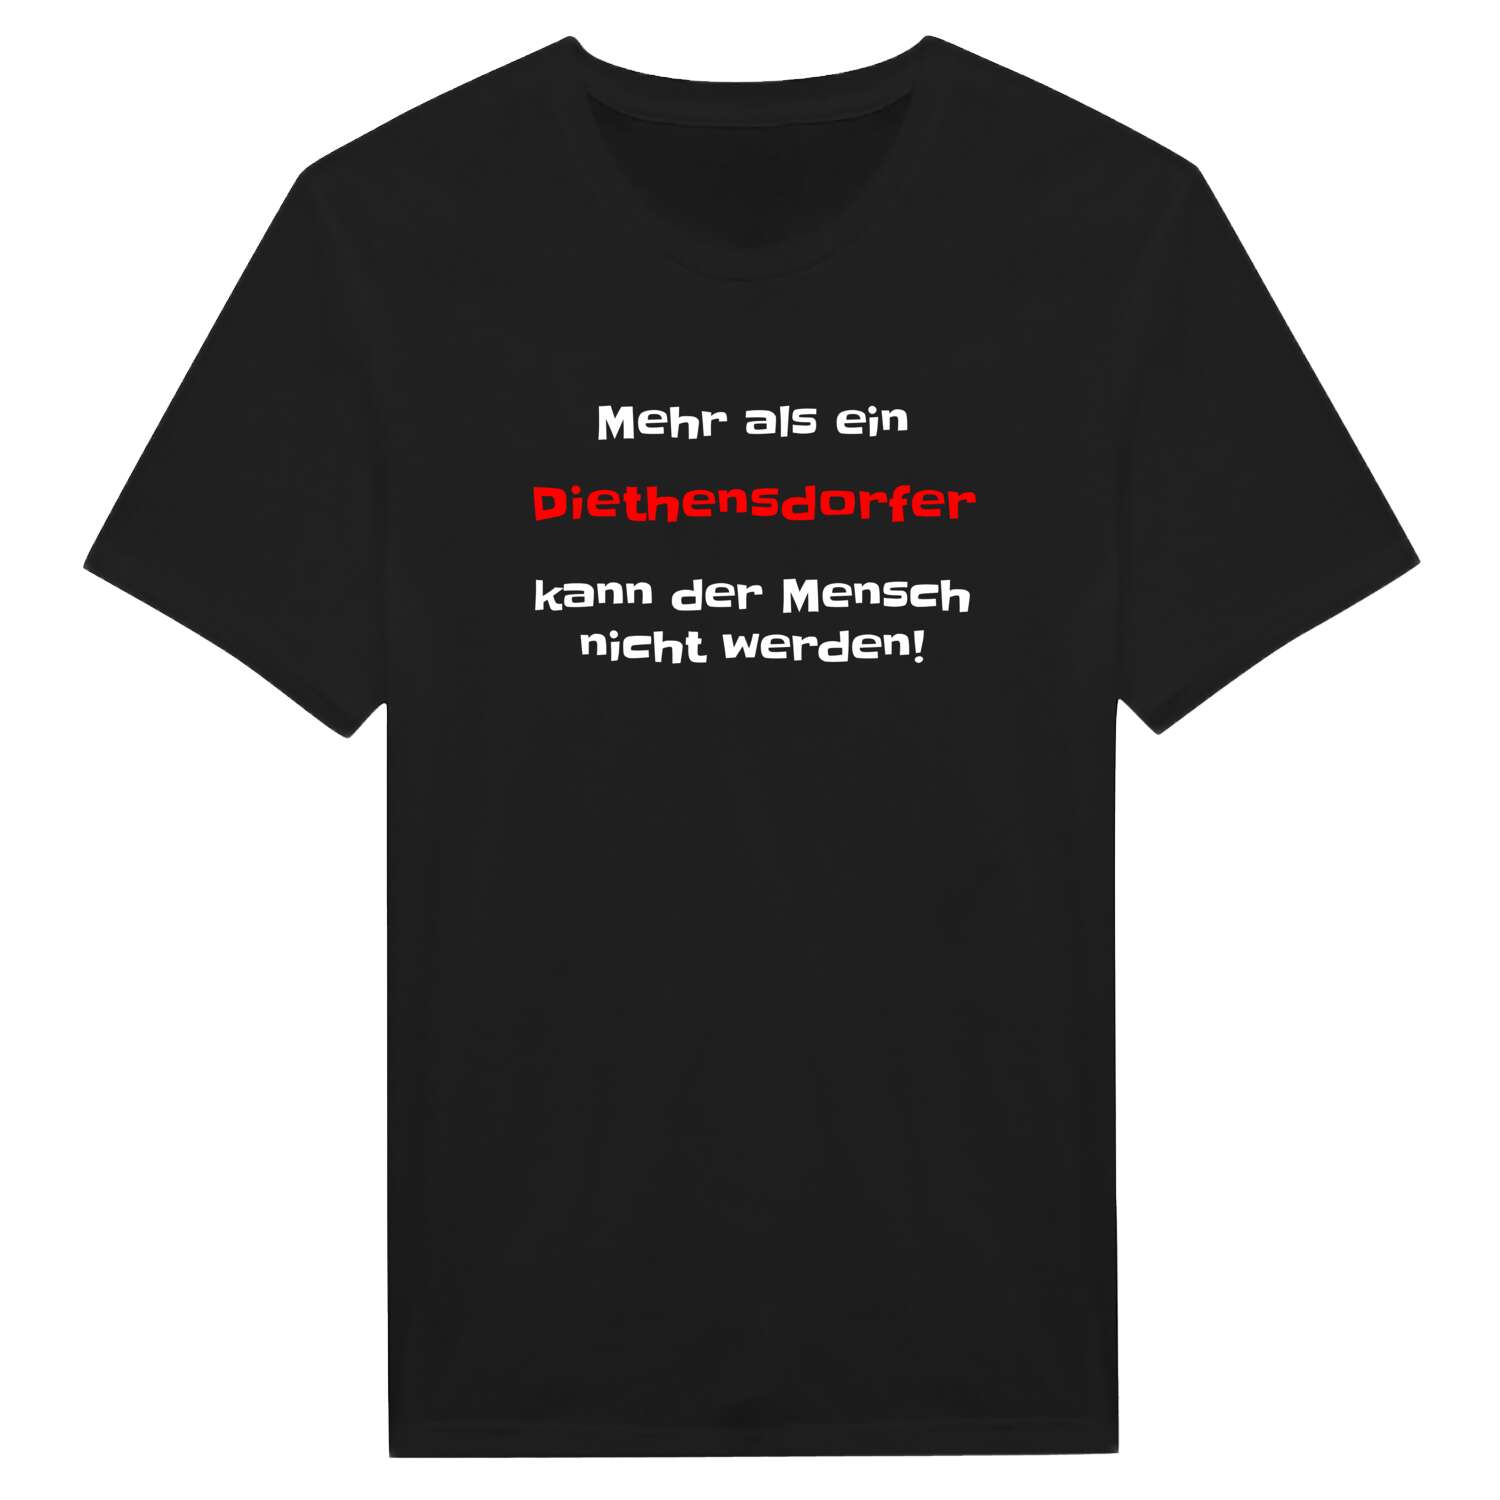 Diethensdorf T-Shirt »Mehr als ein«